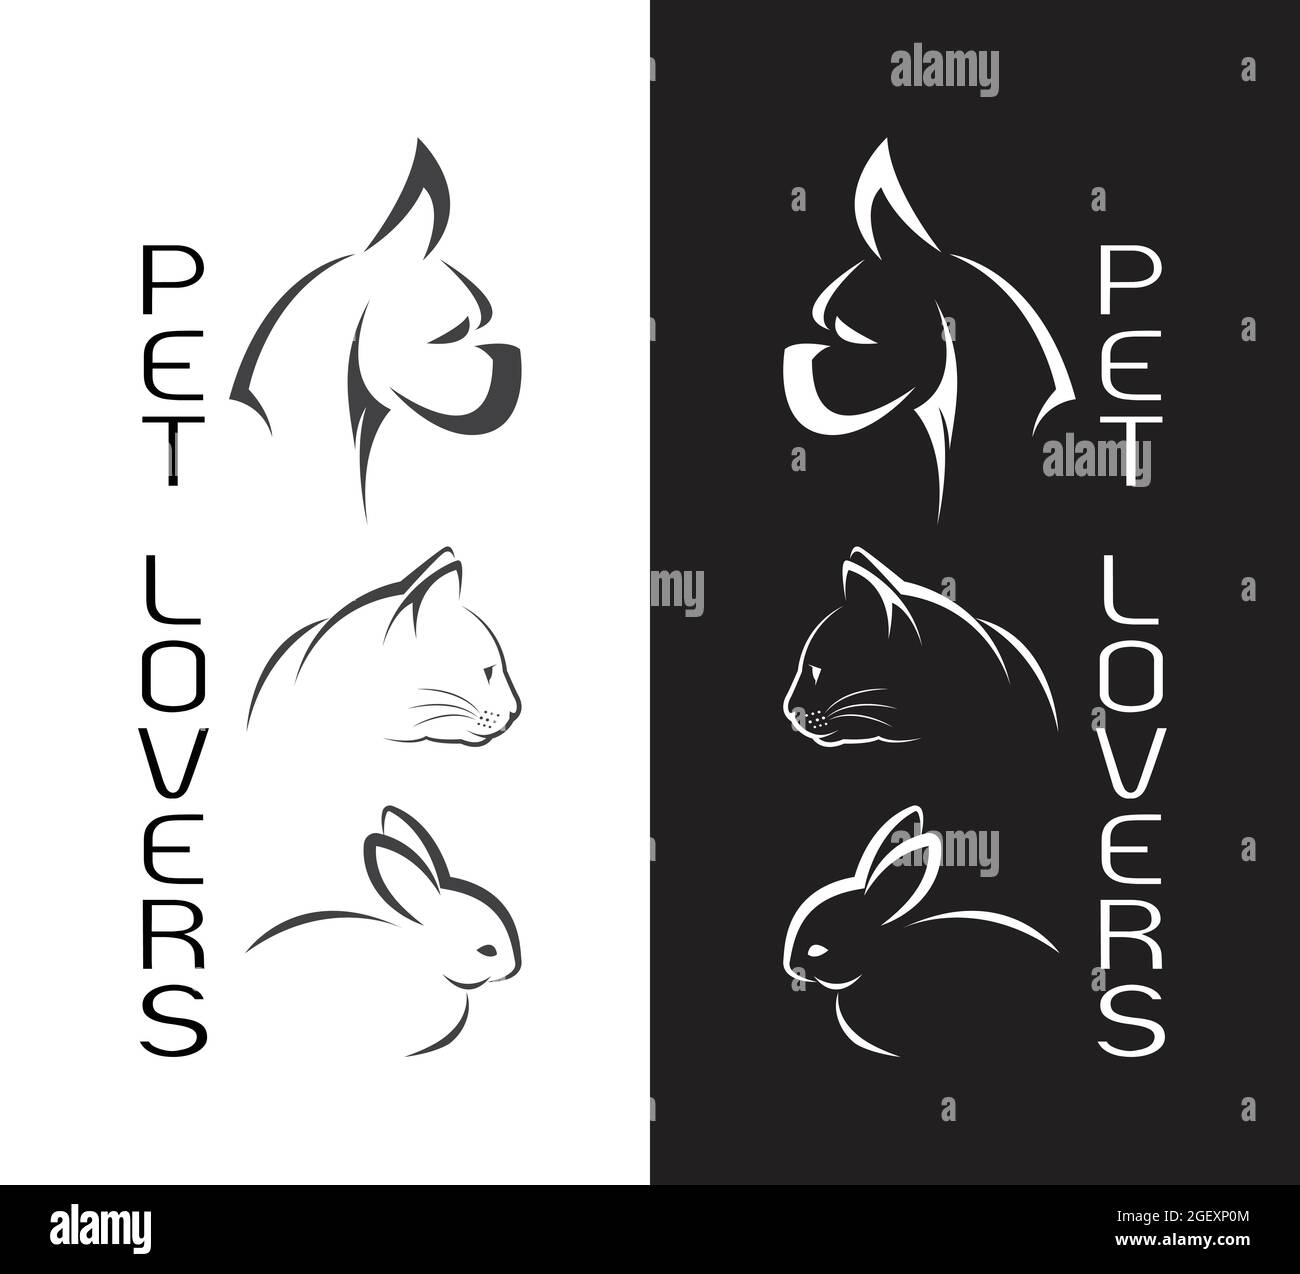 Vektor-Gruppe von Haustieren - Hund, Katze, Kaninchen, isoliert auf weißem Hintergrund und schwarzem Hintergrund / Pet Logo. Leicht editierbare Vektorgrafik mit Ebenen. Stock Vektor